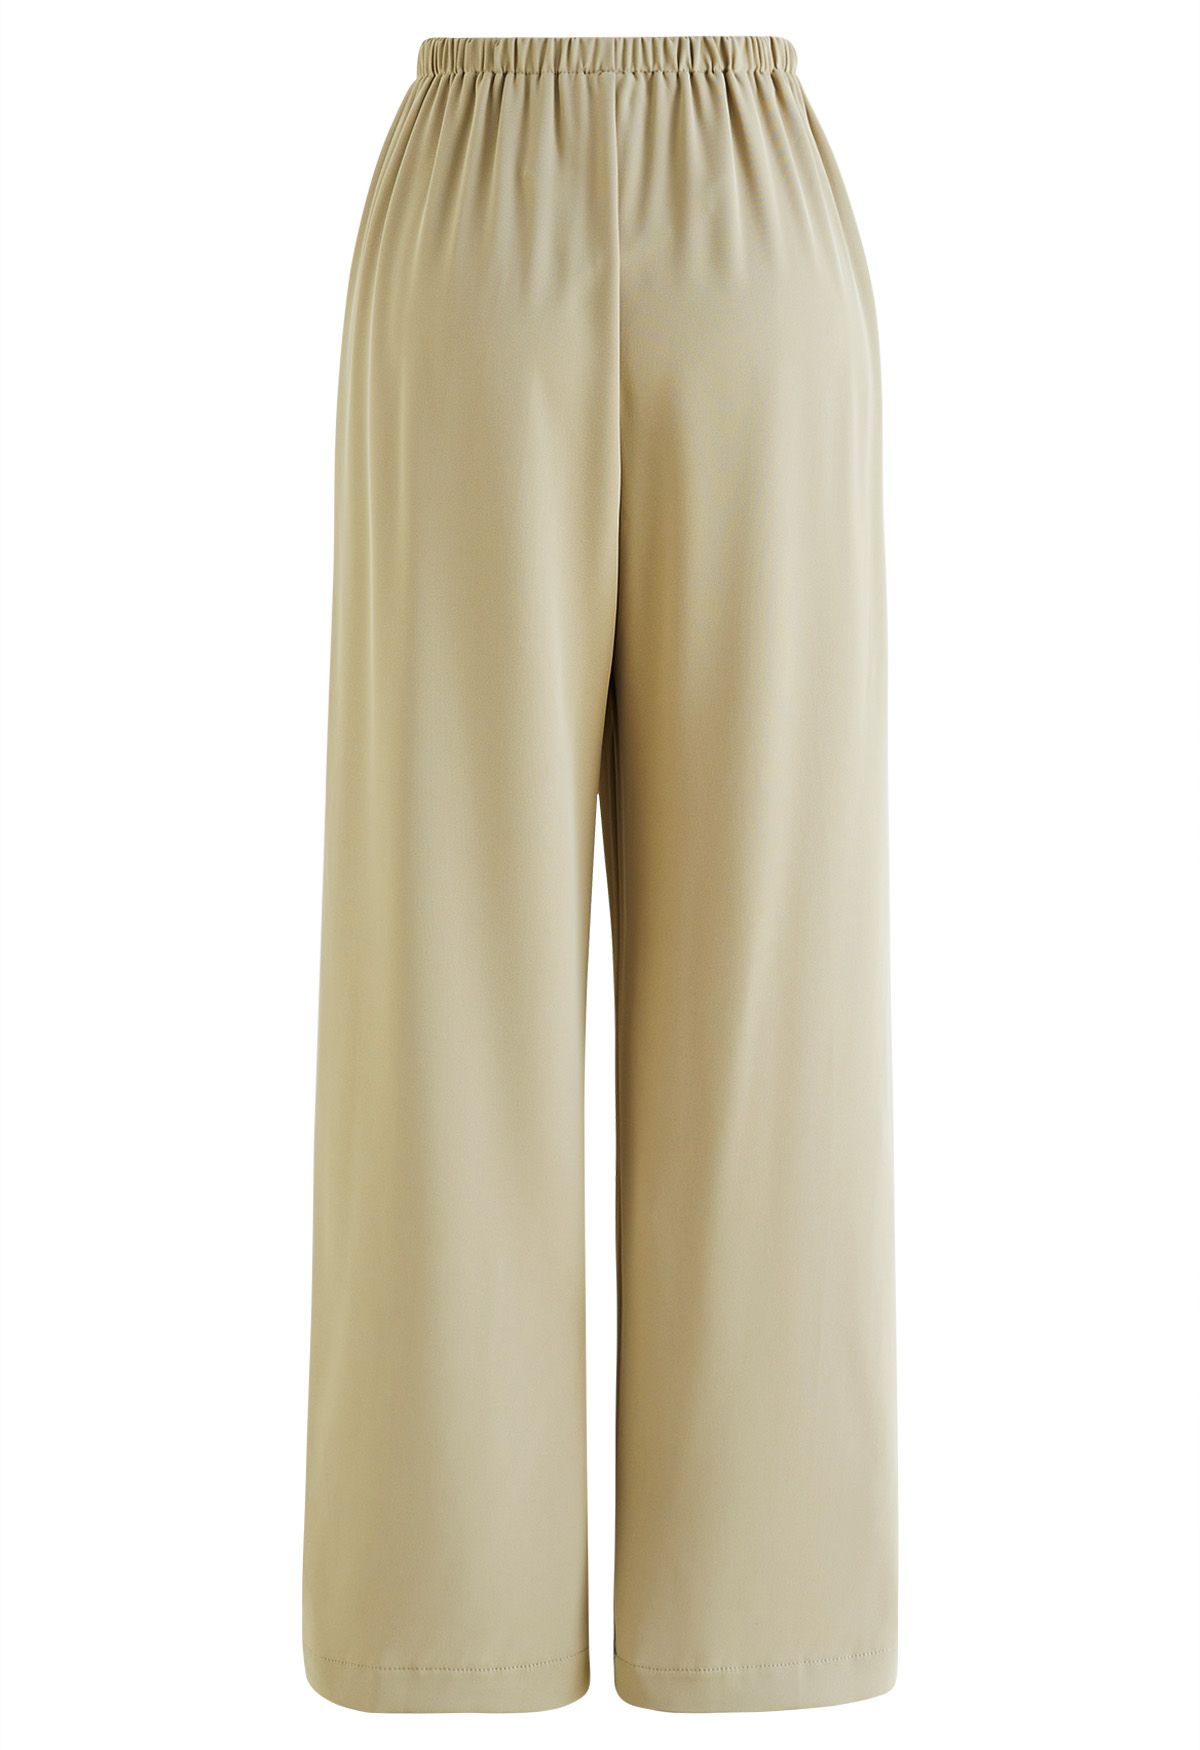 Pantalones sin cordones de satén liso en marrón claro